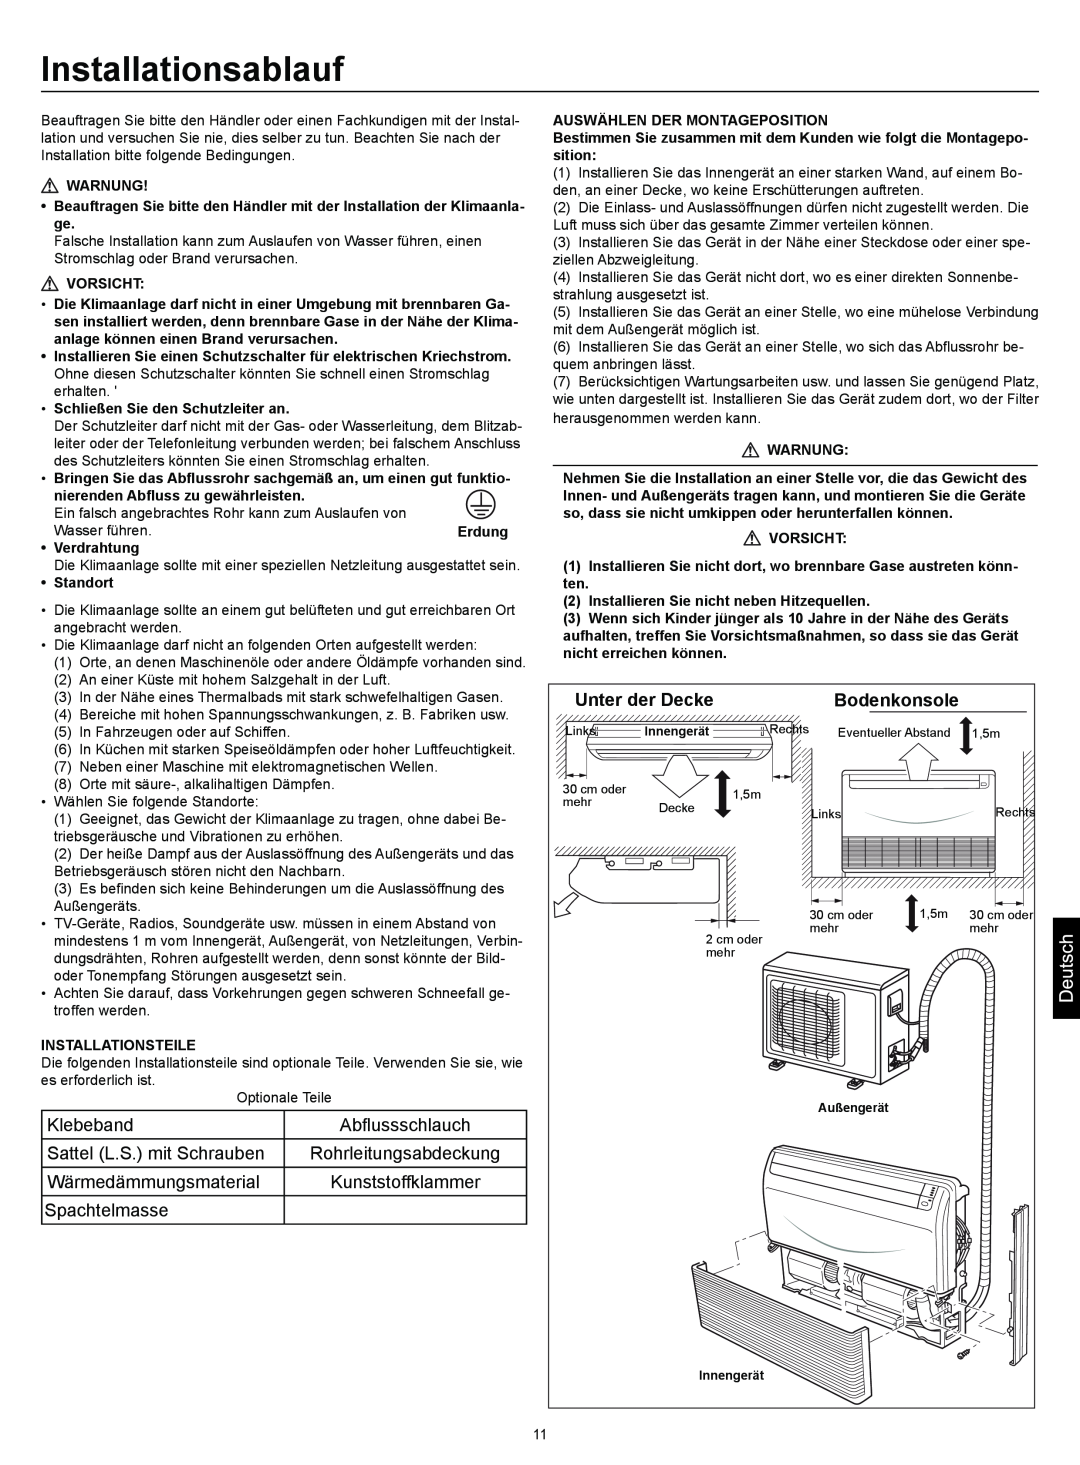 Haier AC18CS1ERA, AC24CS1ERA, AC12CS1ERA operation manual Installationsablauf, Unter der Decke, Bodenkonsole 